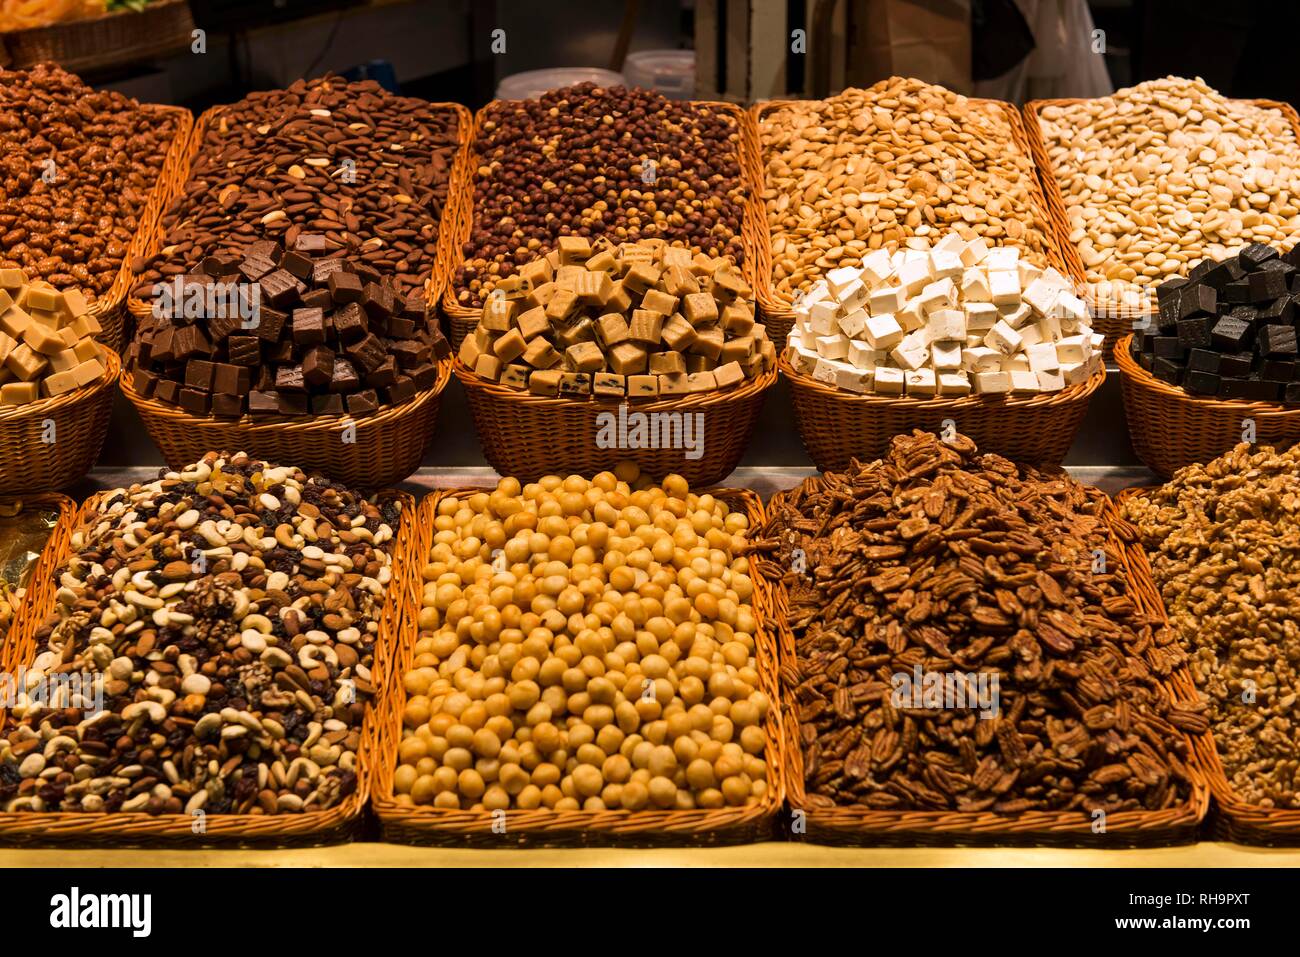 Various nuts and nougat, Mercat de la Boqueria or Mercat de Sant Josep, Market Halls, Barcelona, Spain Stock Photo